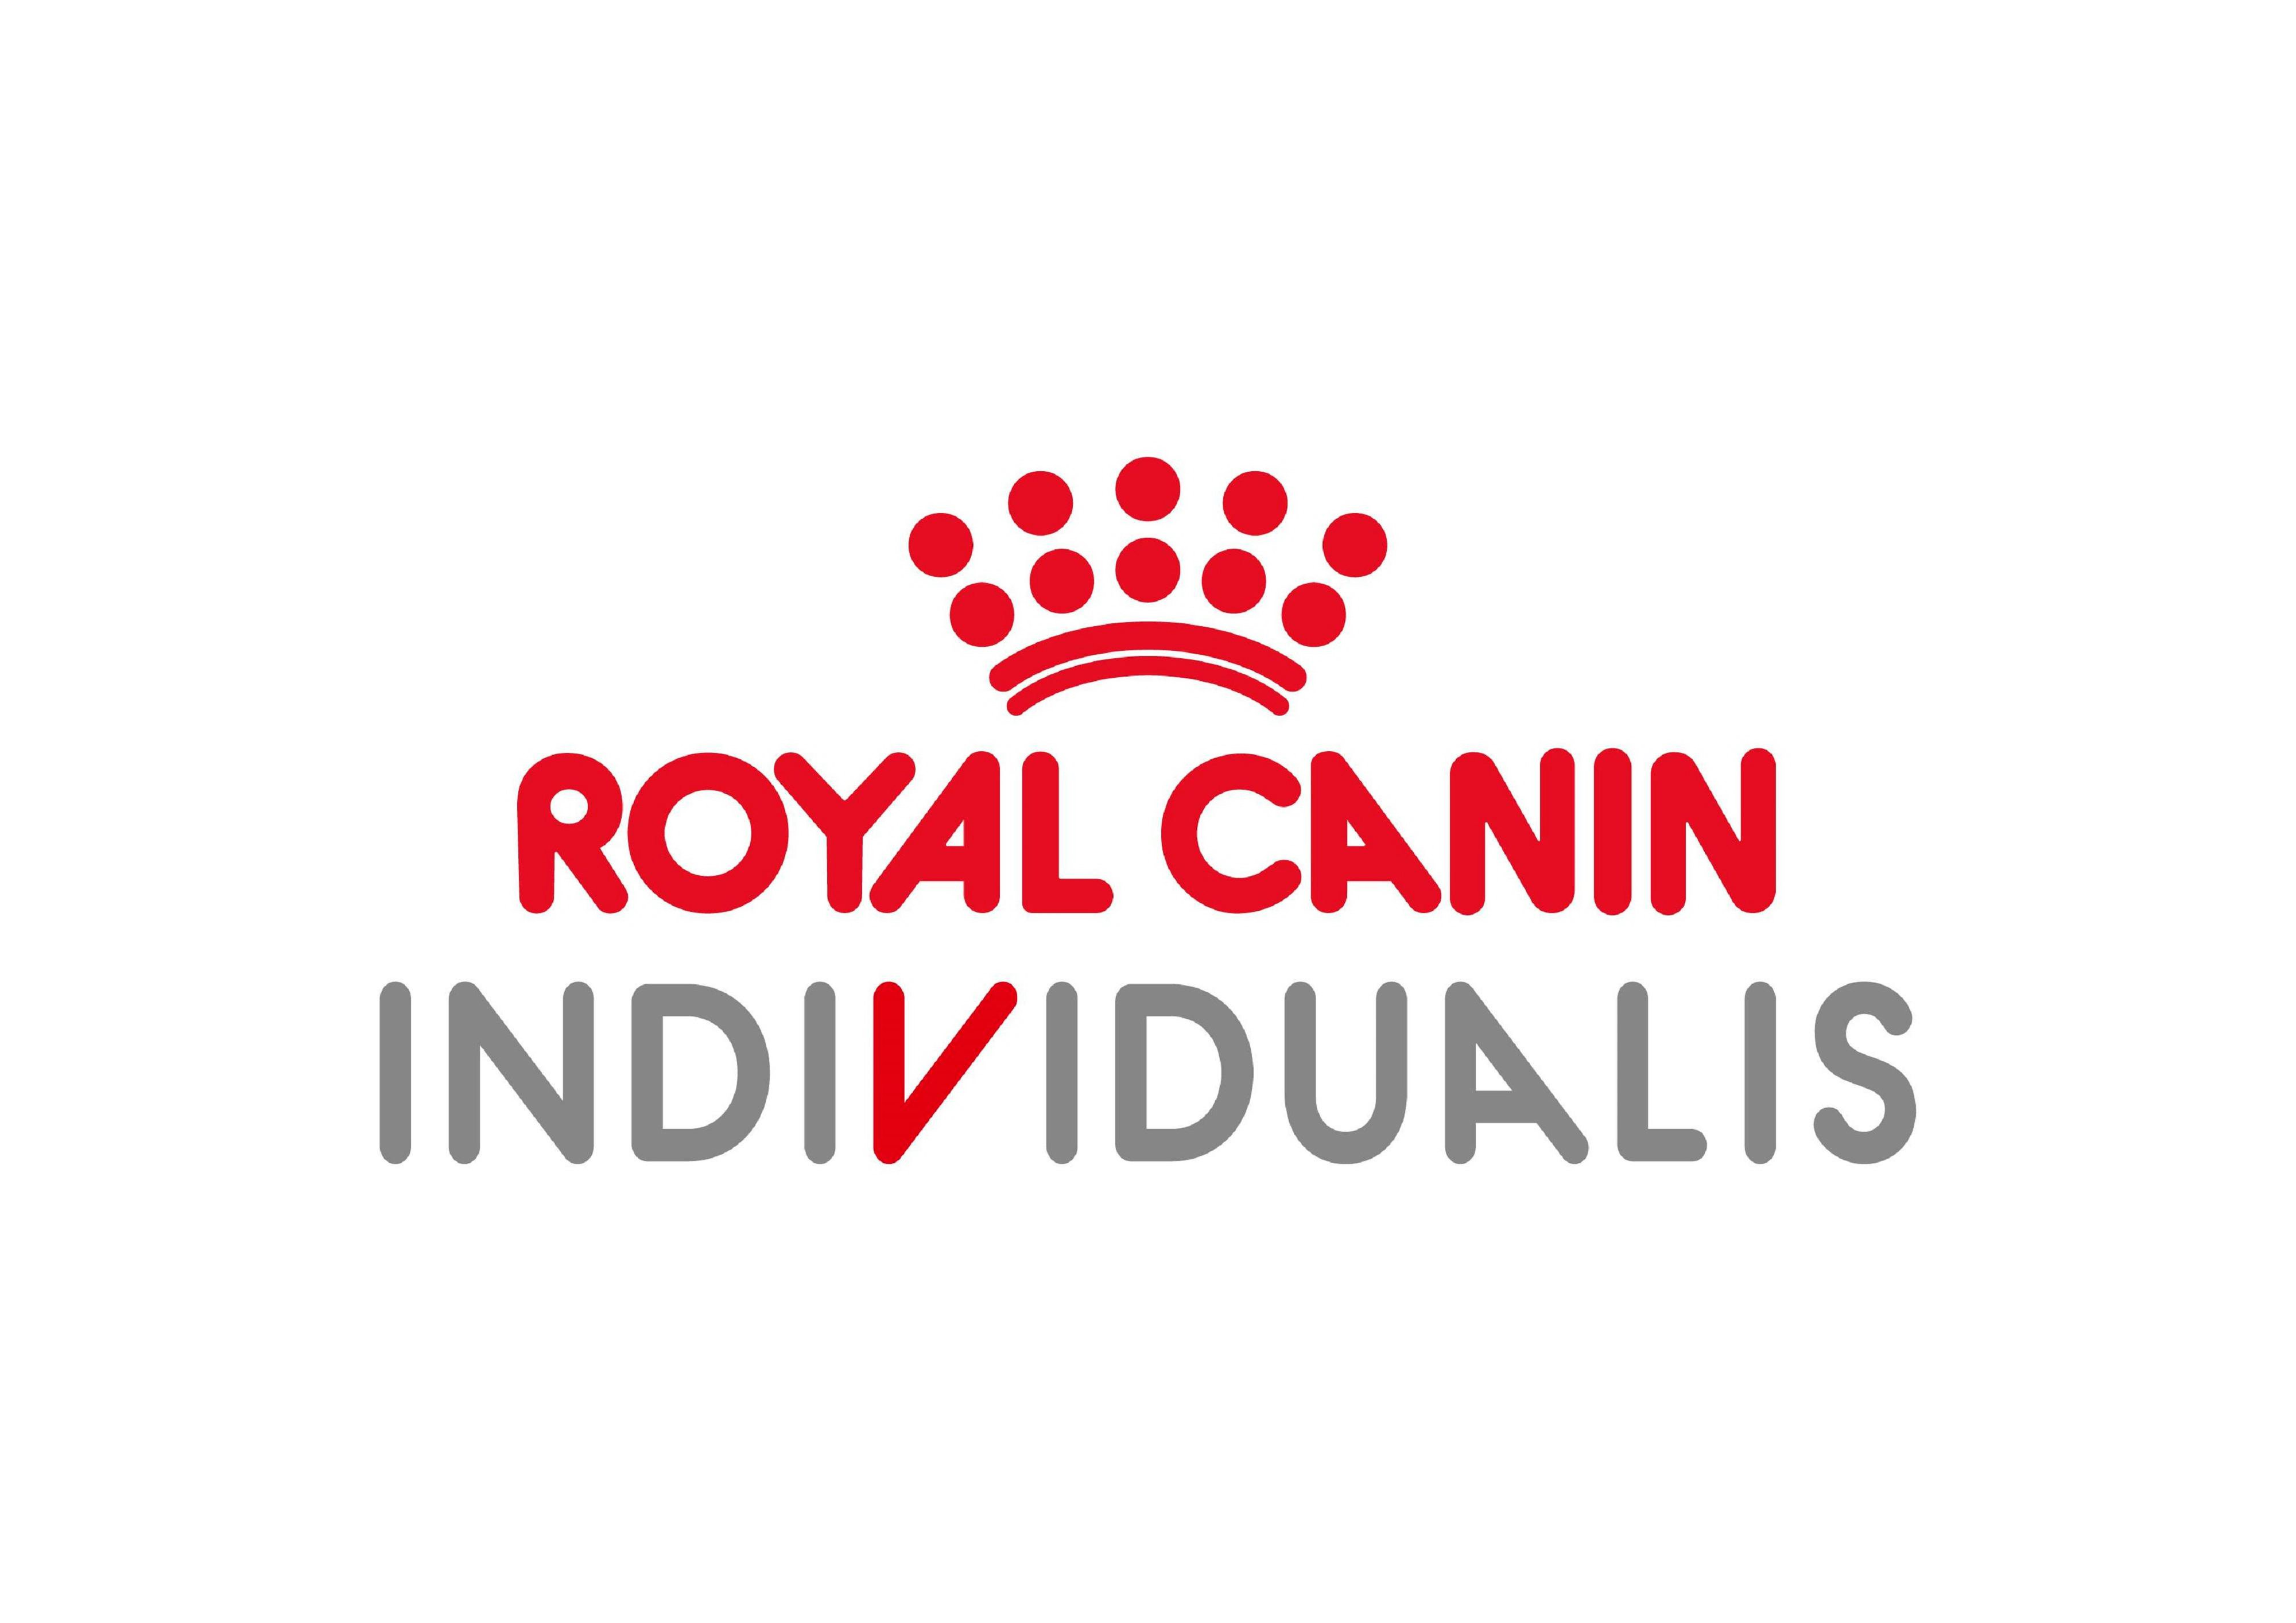  ROYAL CANIN INDIVIDUALIS